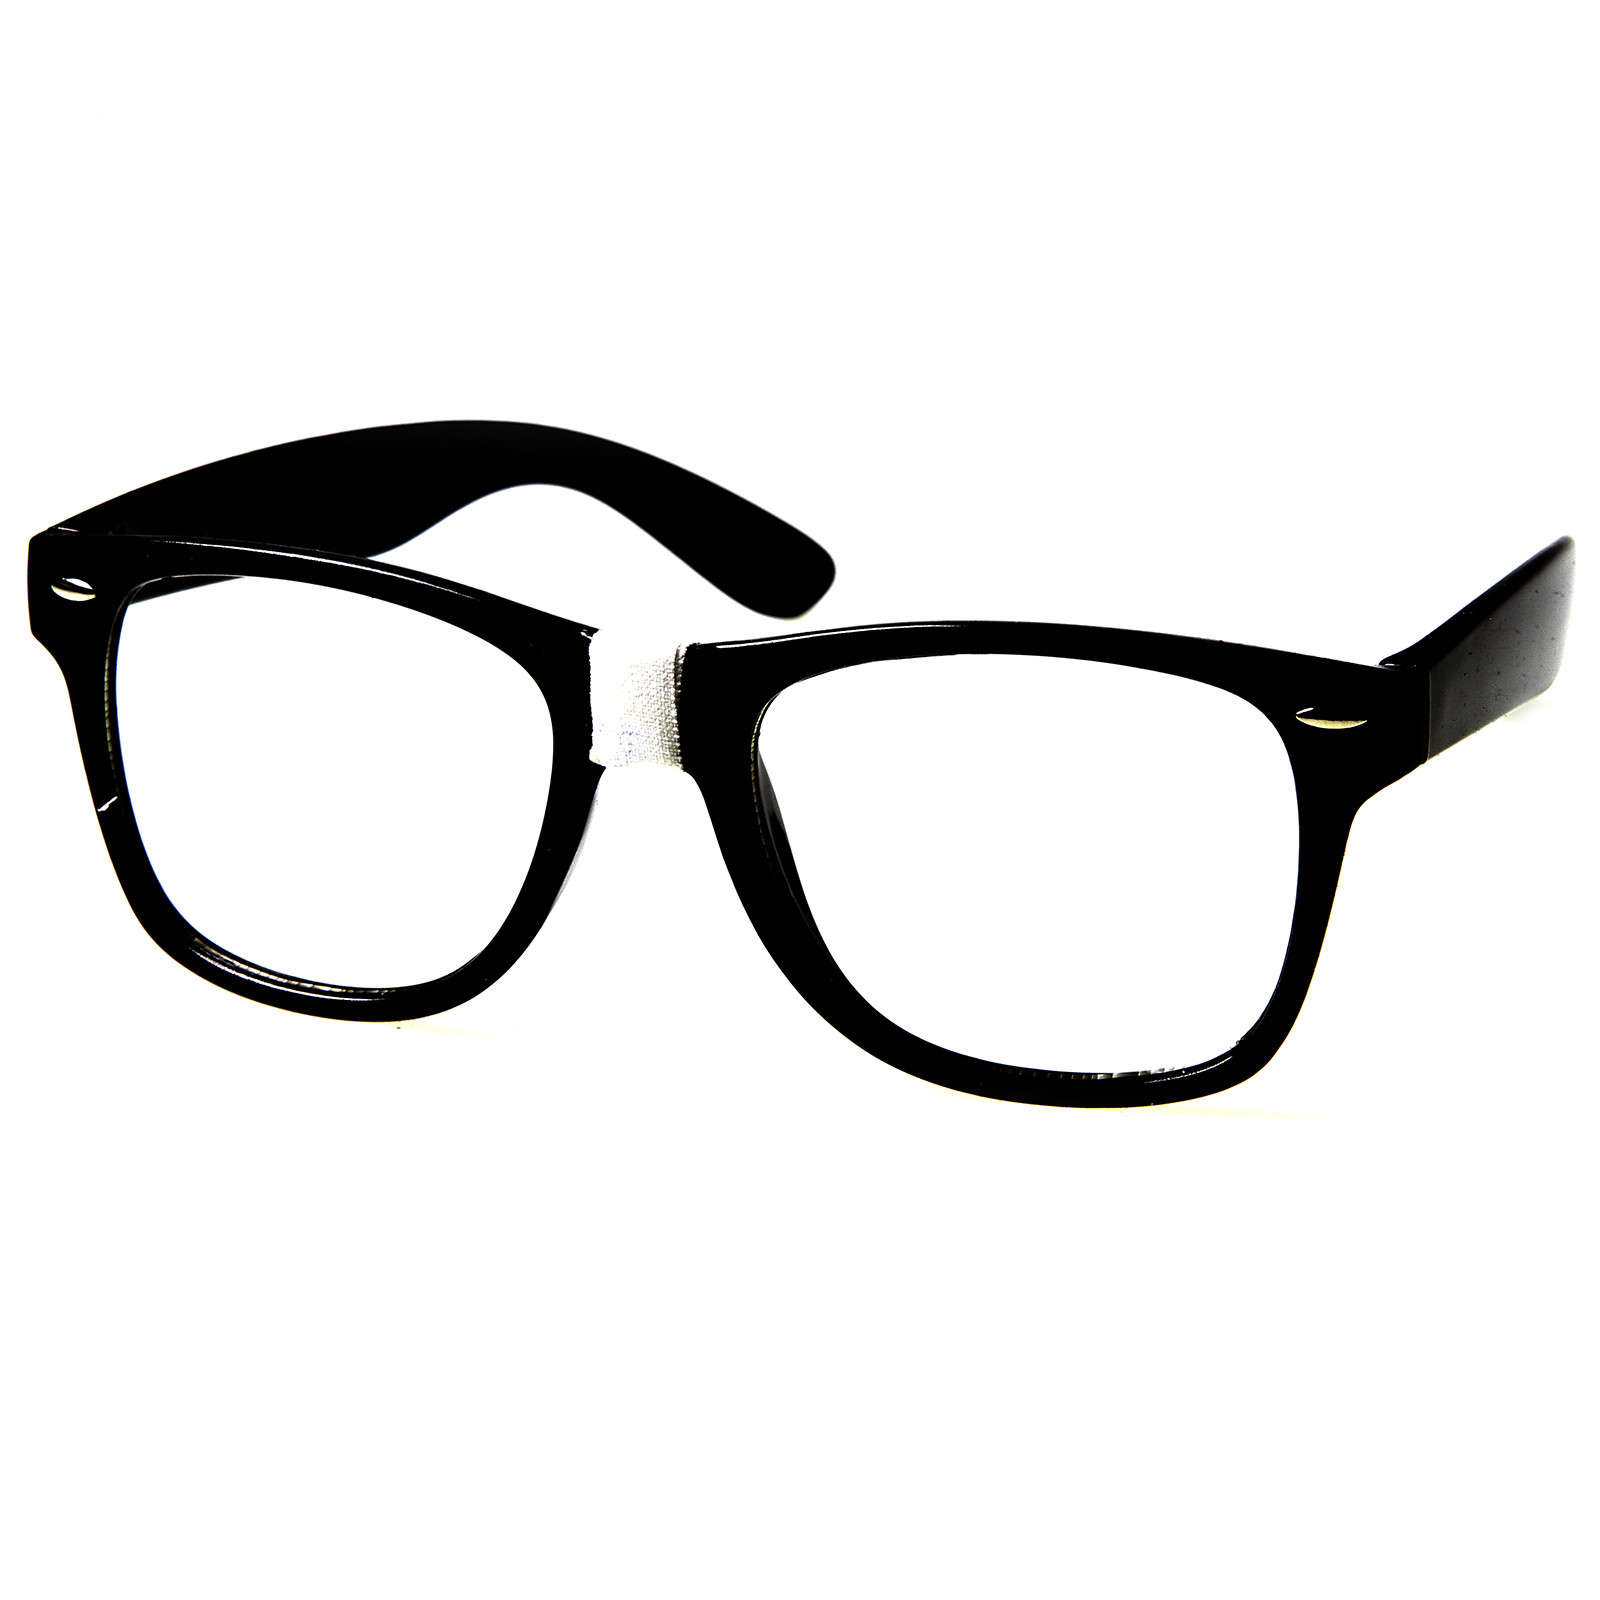 Nerd glasses clip art. Eyeglasses clipart geeky glass